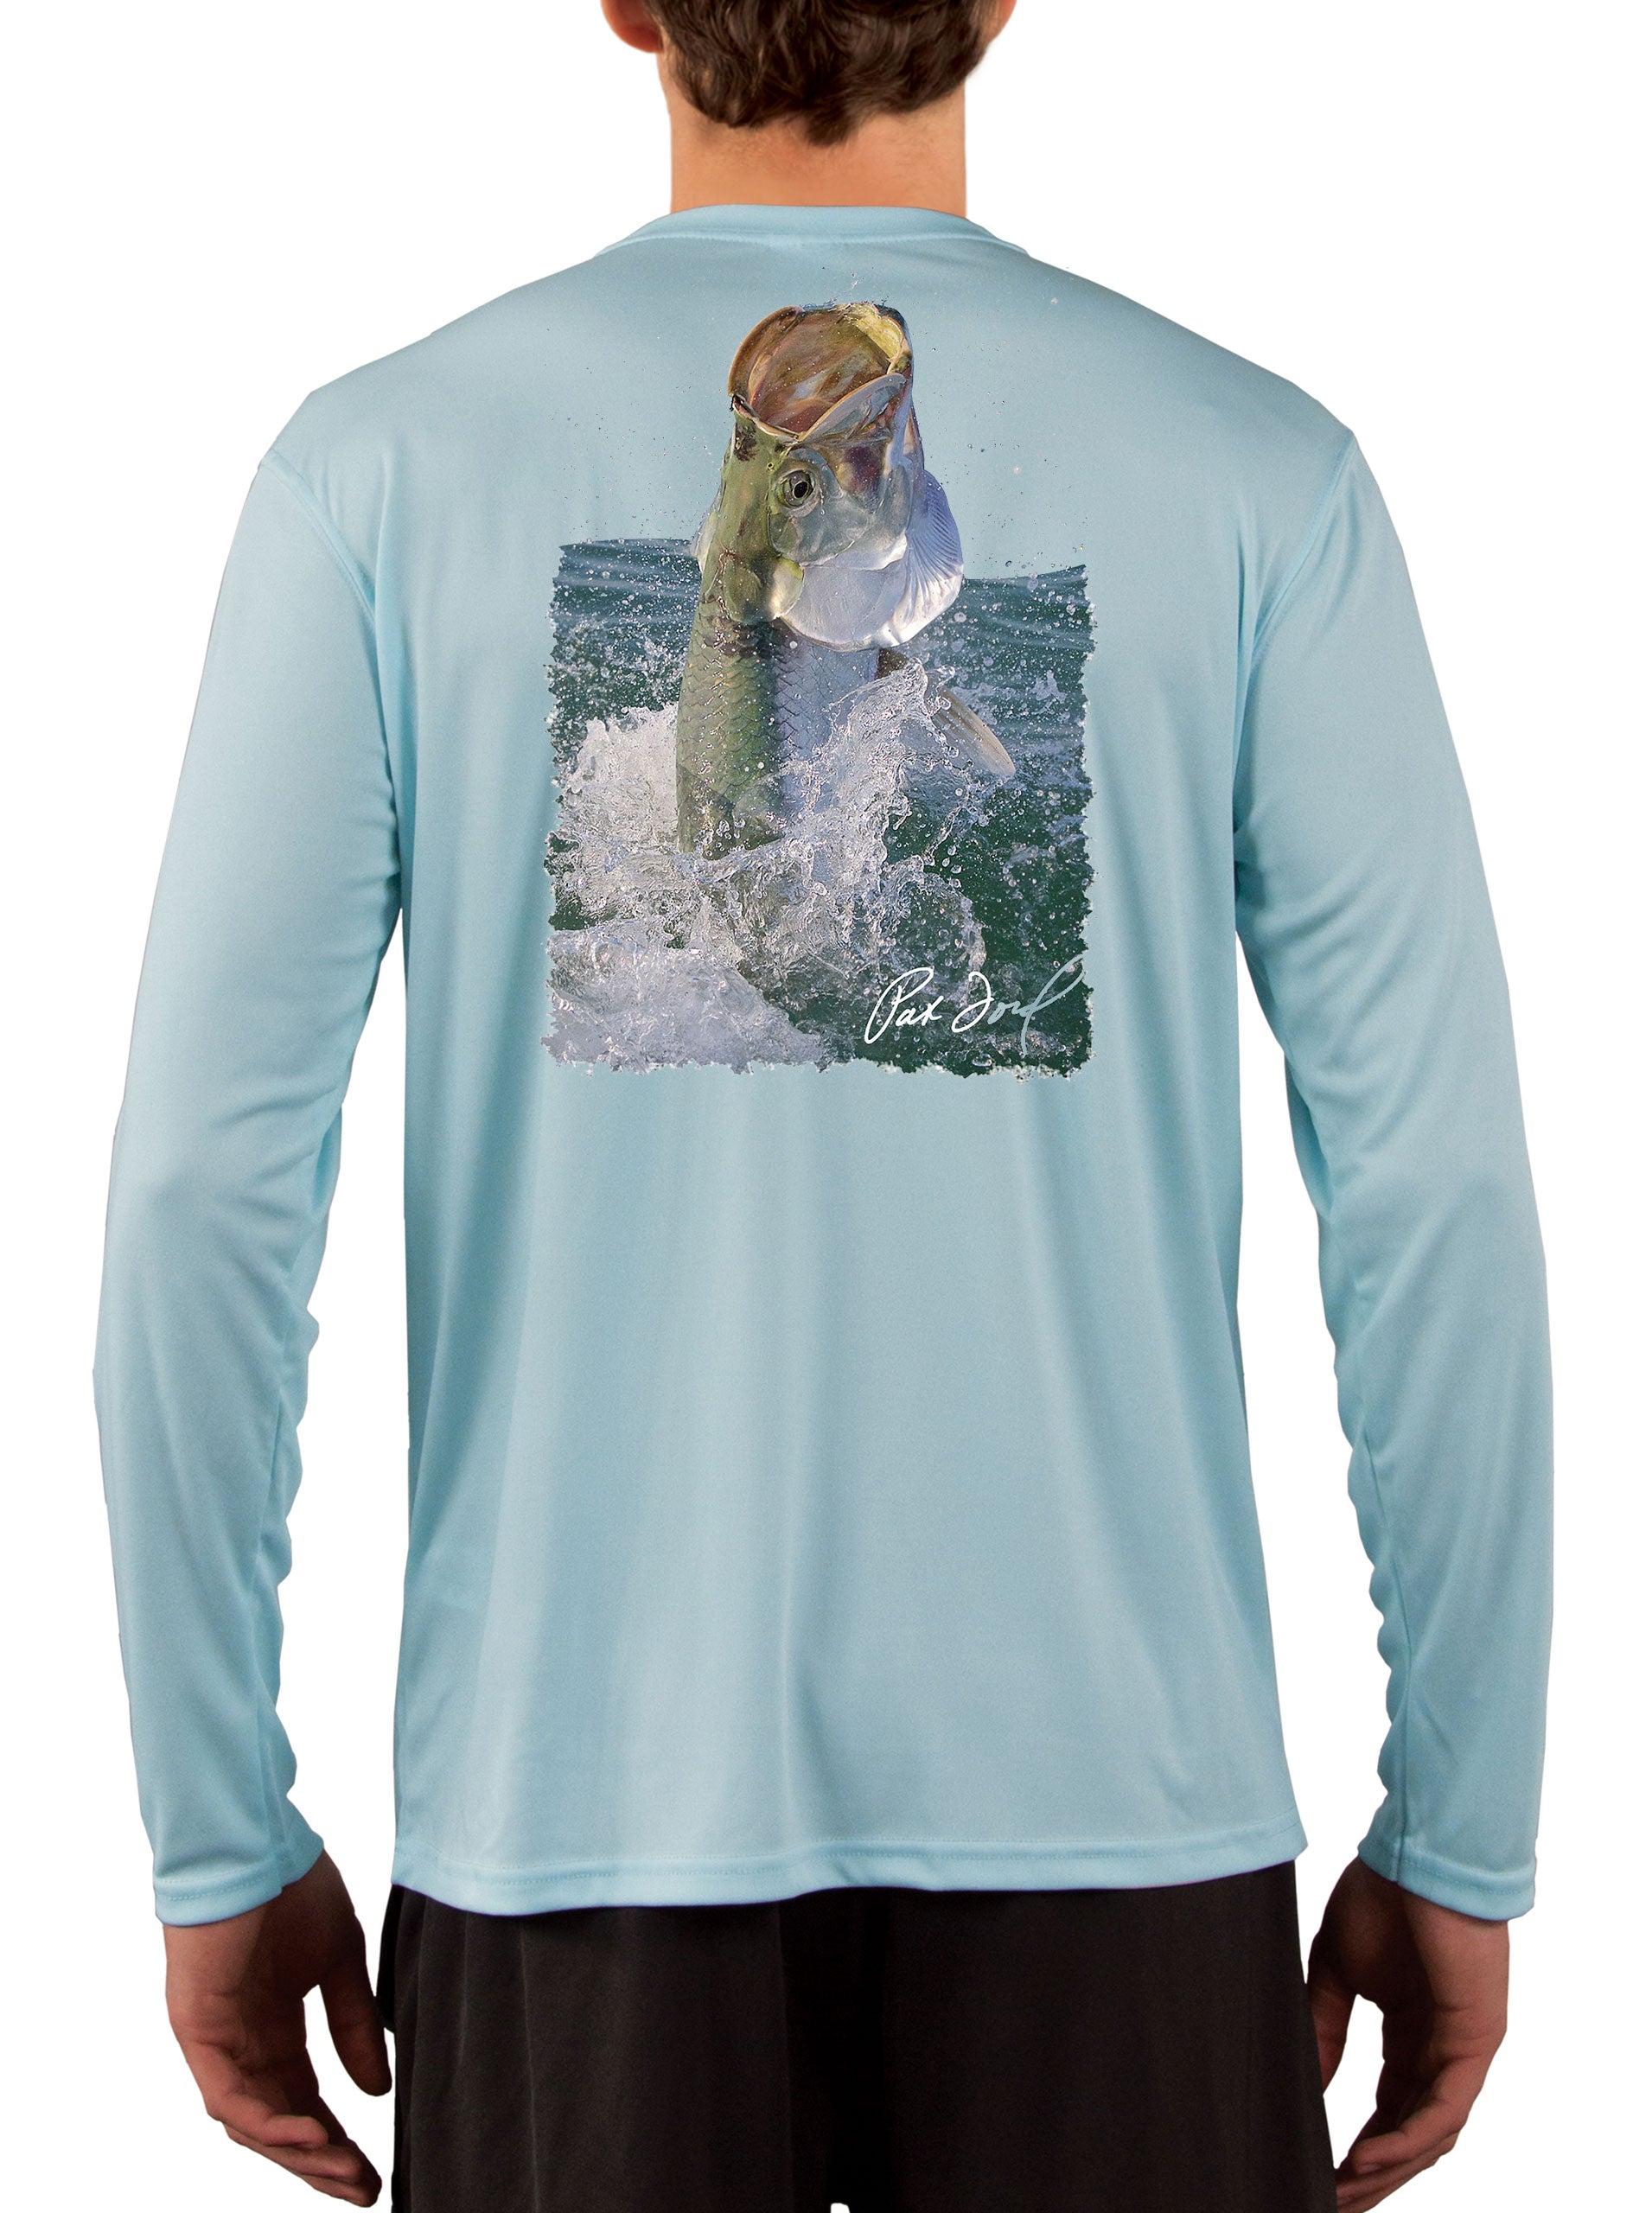 Pat Ford Tarpon Rising Fishing Shirt - Skiff Life